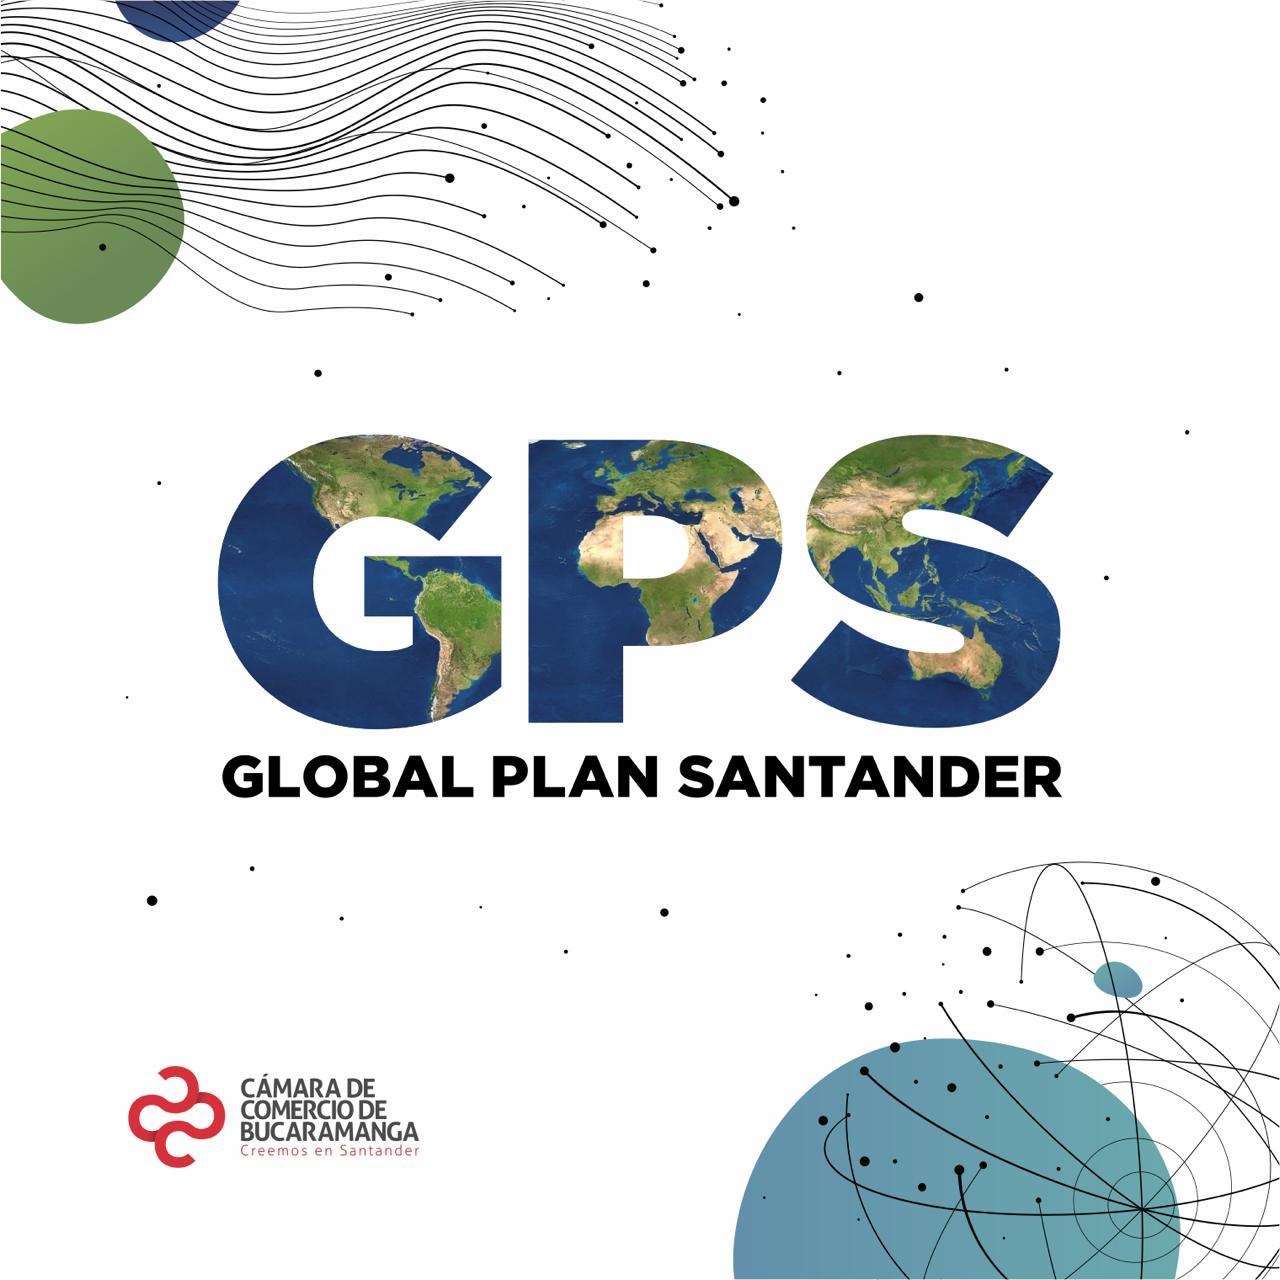  Global Plan Santander: luego de dos años de su creación la región presenta el crecimiento más alto en exportaciones del país